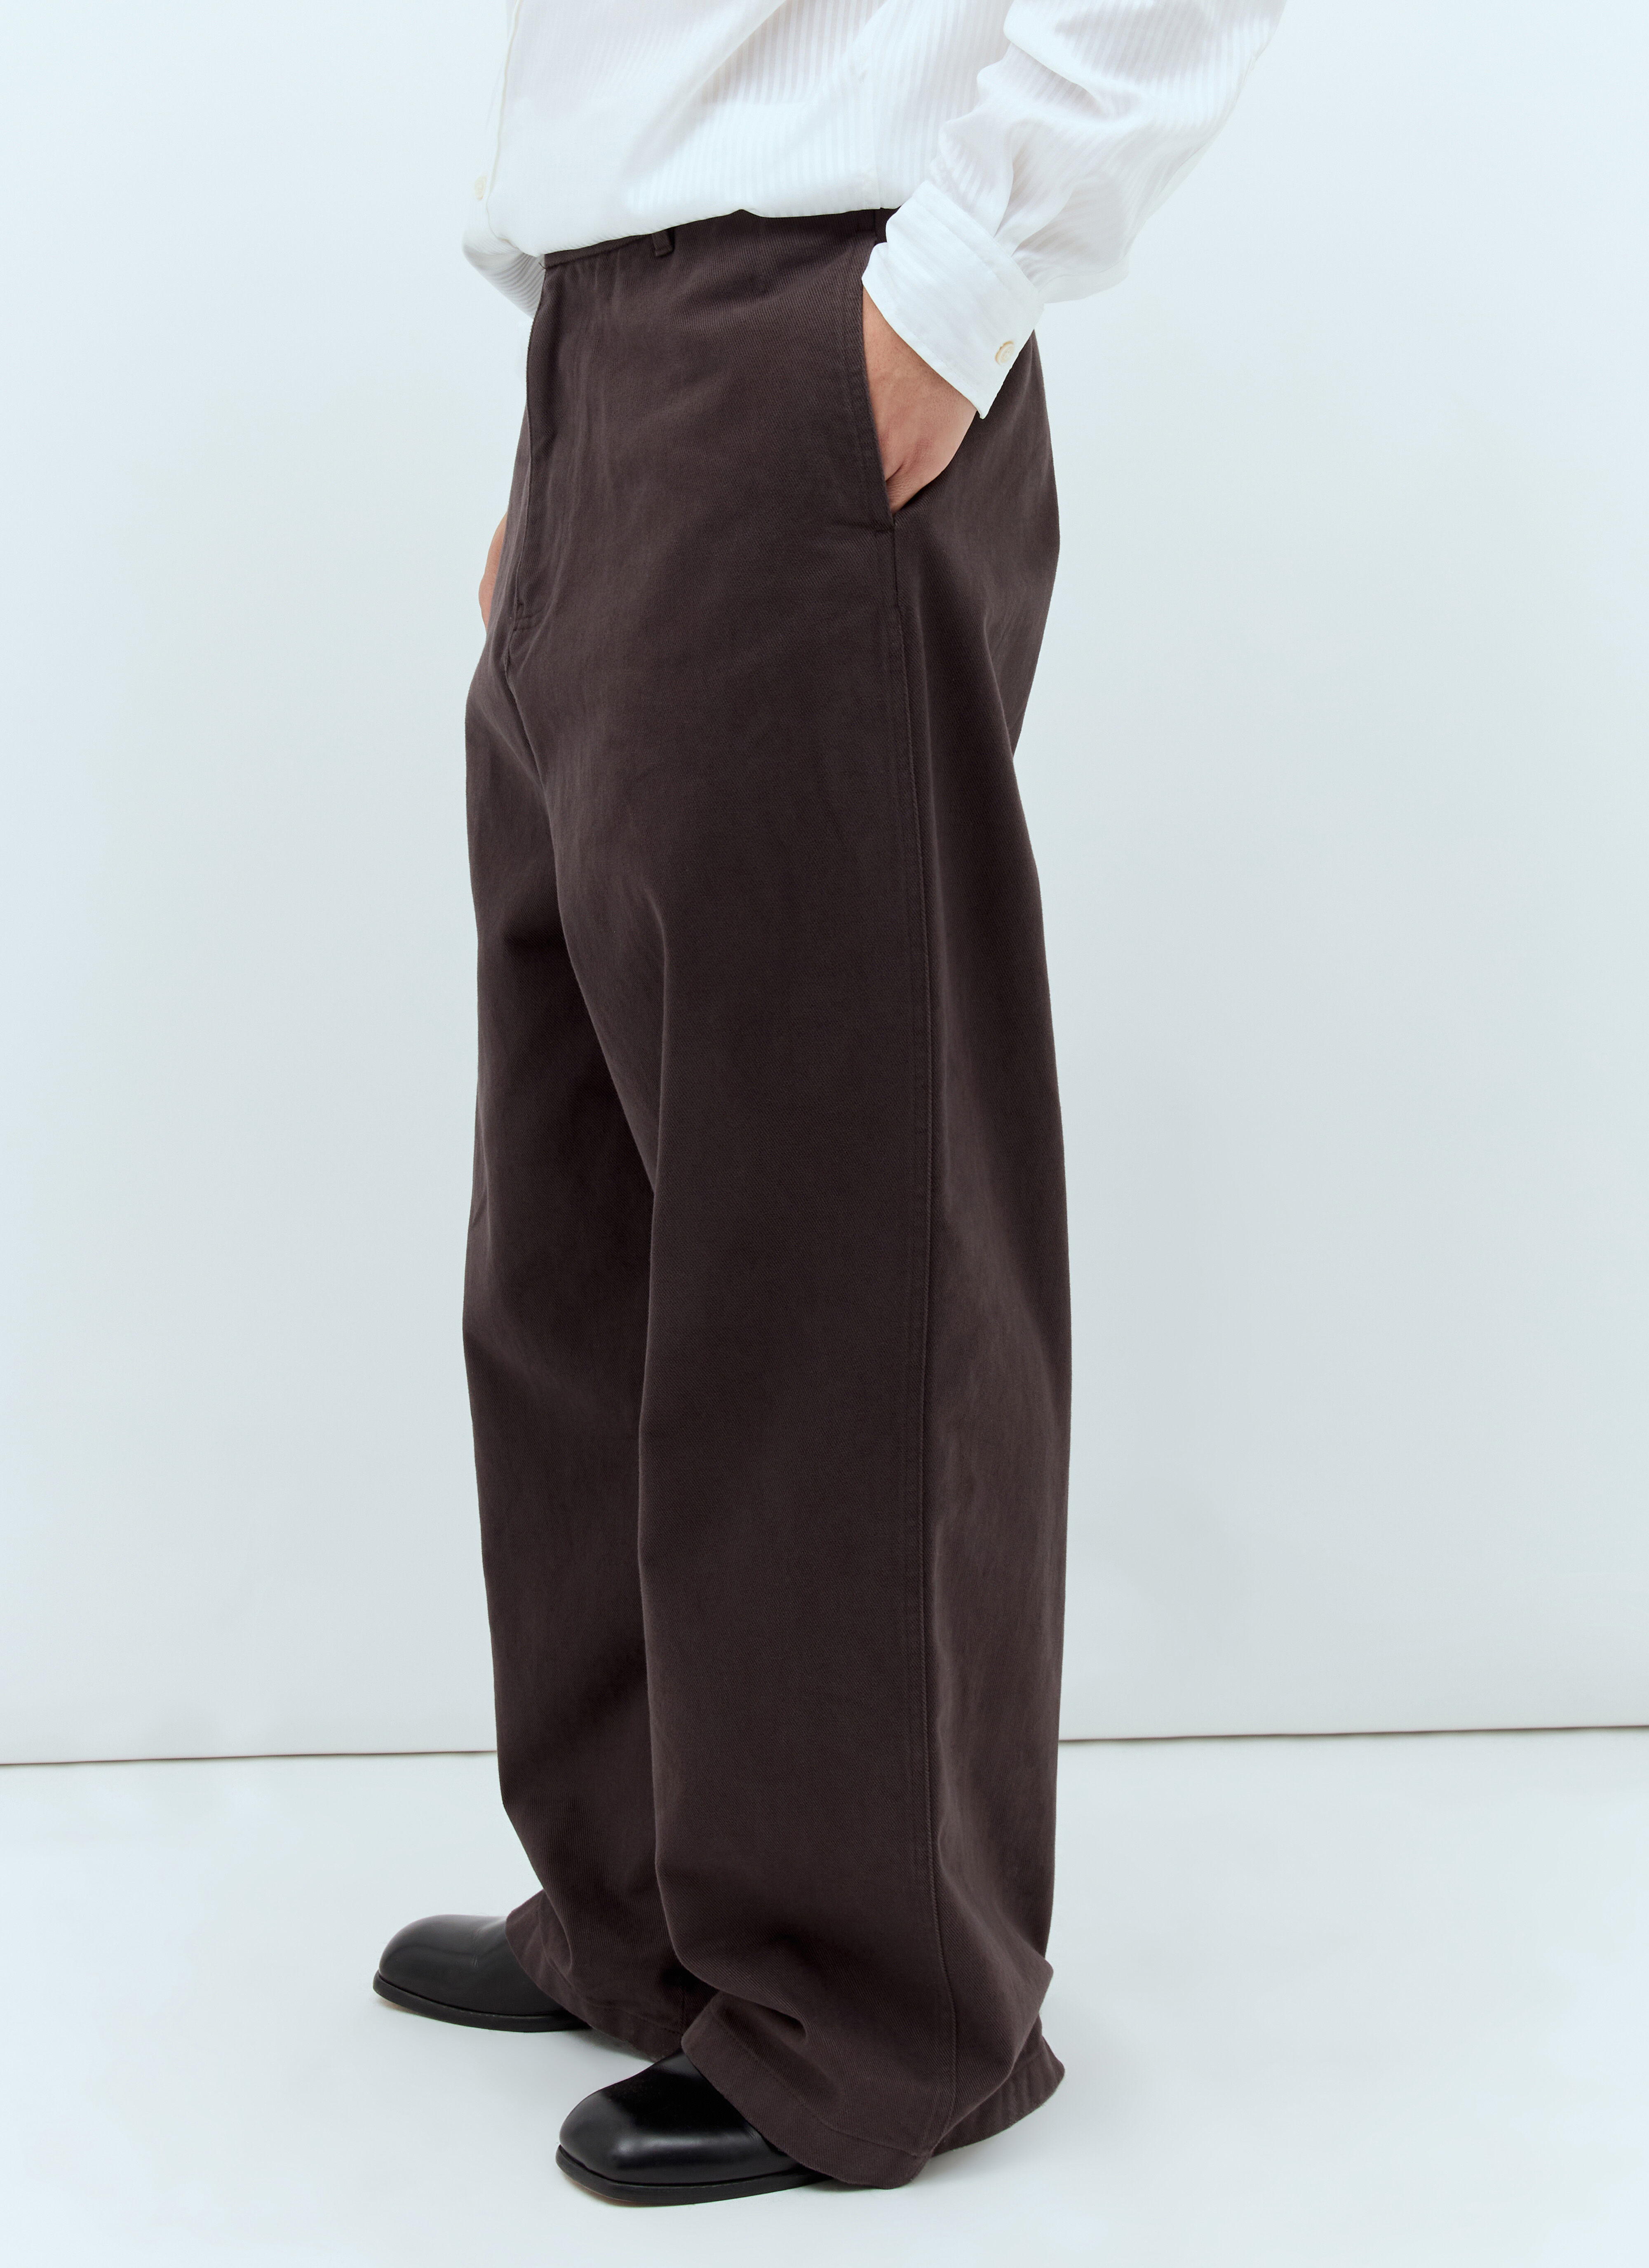 Jean Paul Gaultier Baggy Twill Pants Red jpg0157001